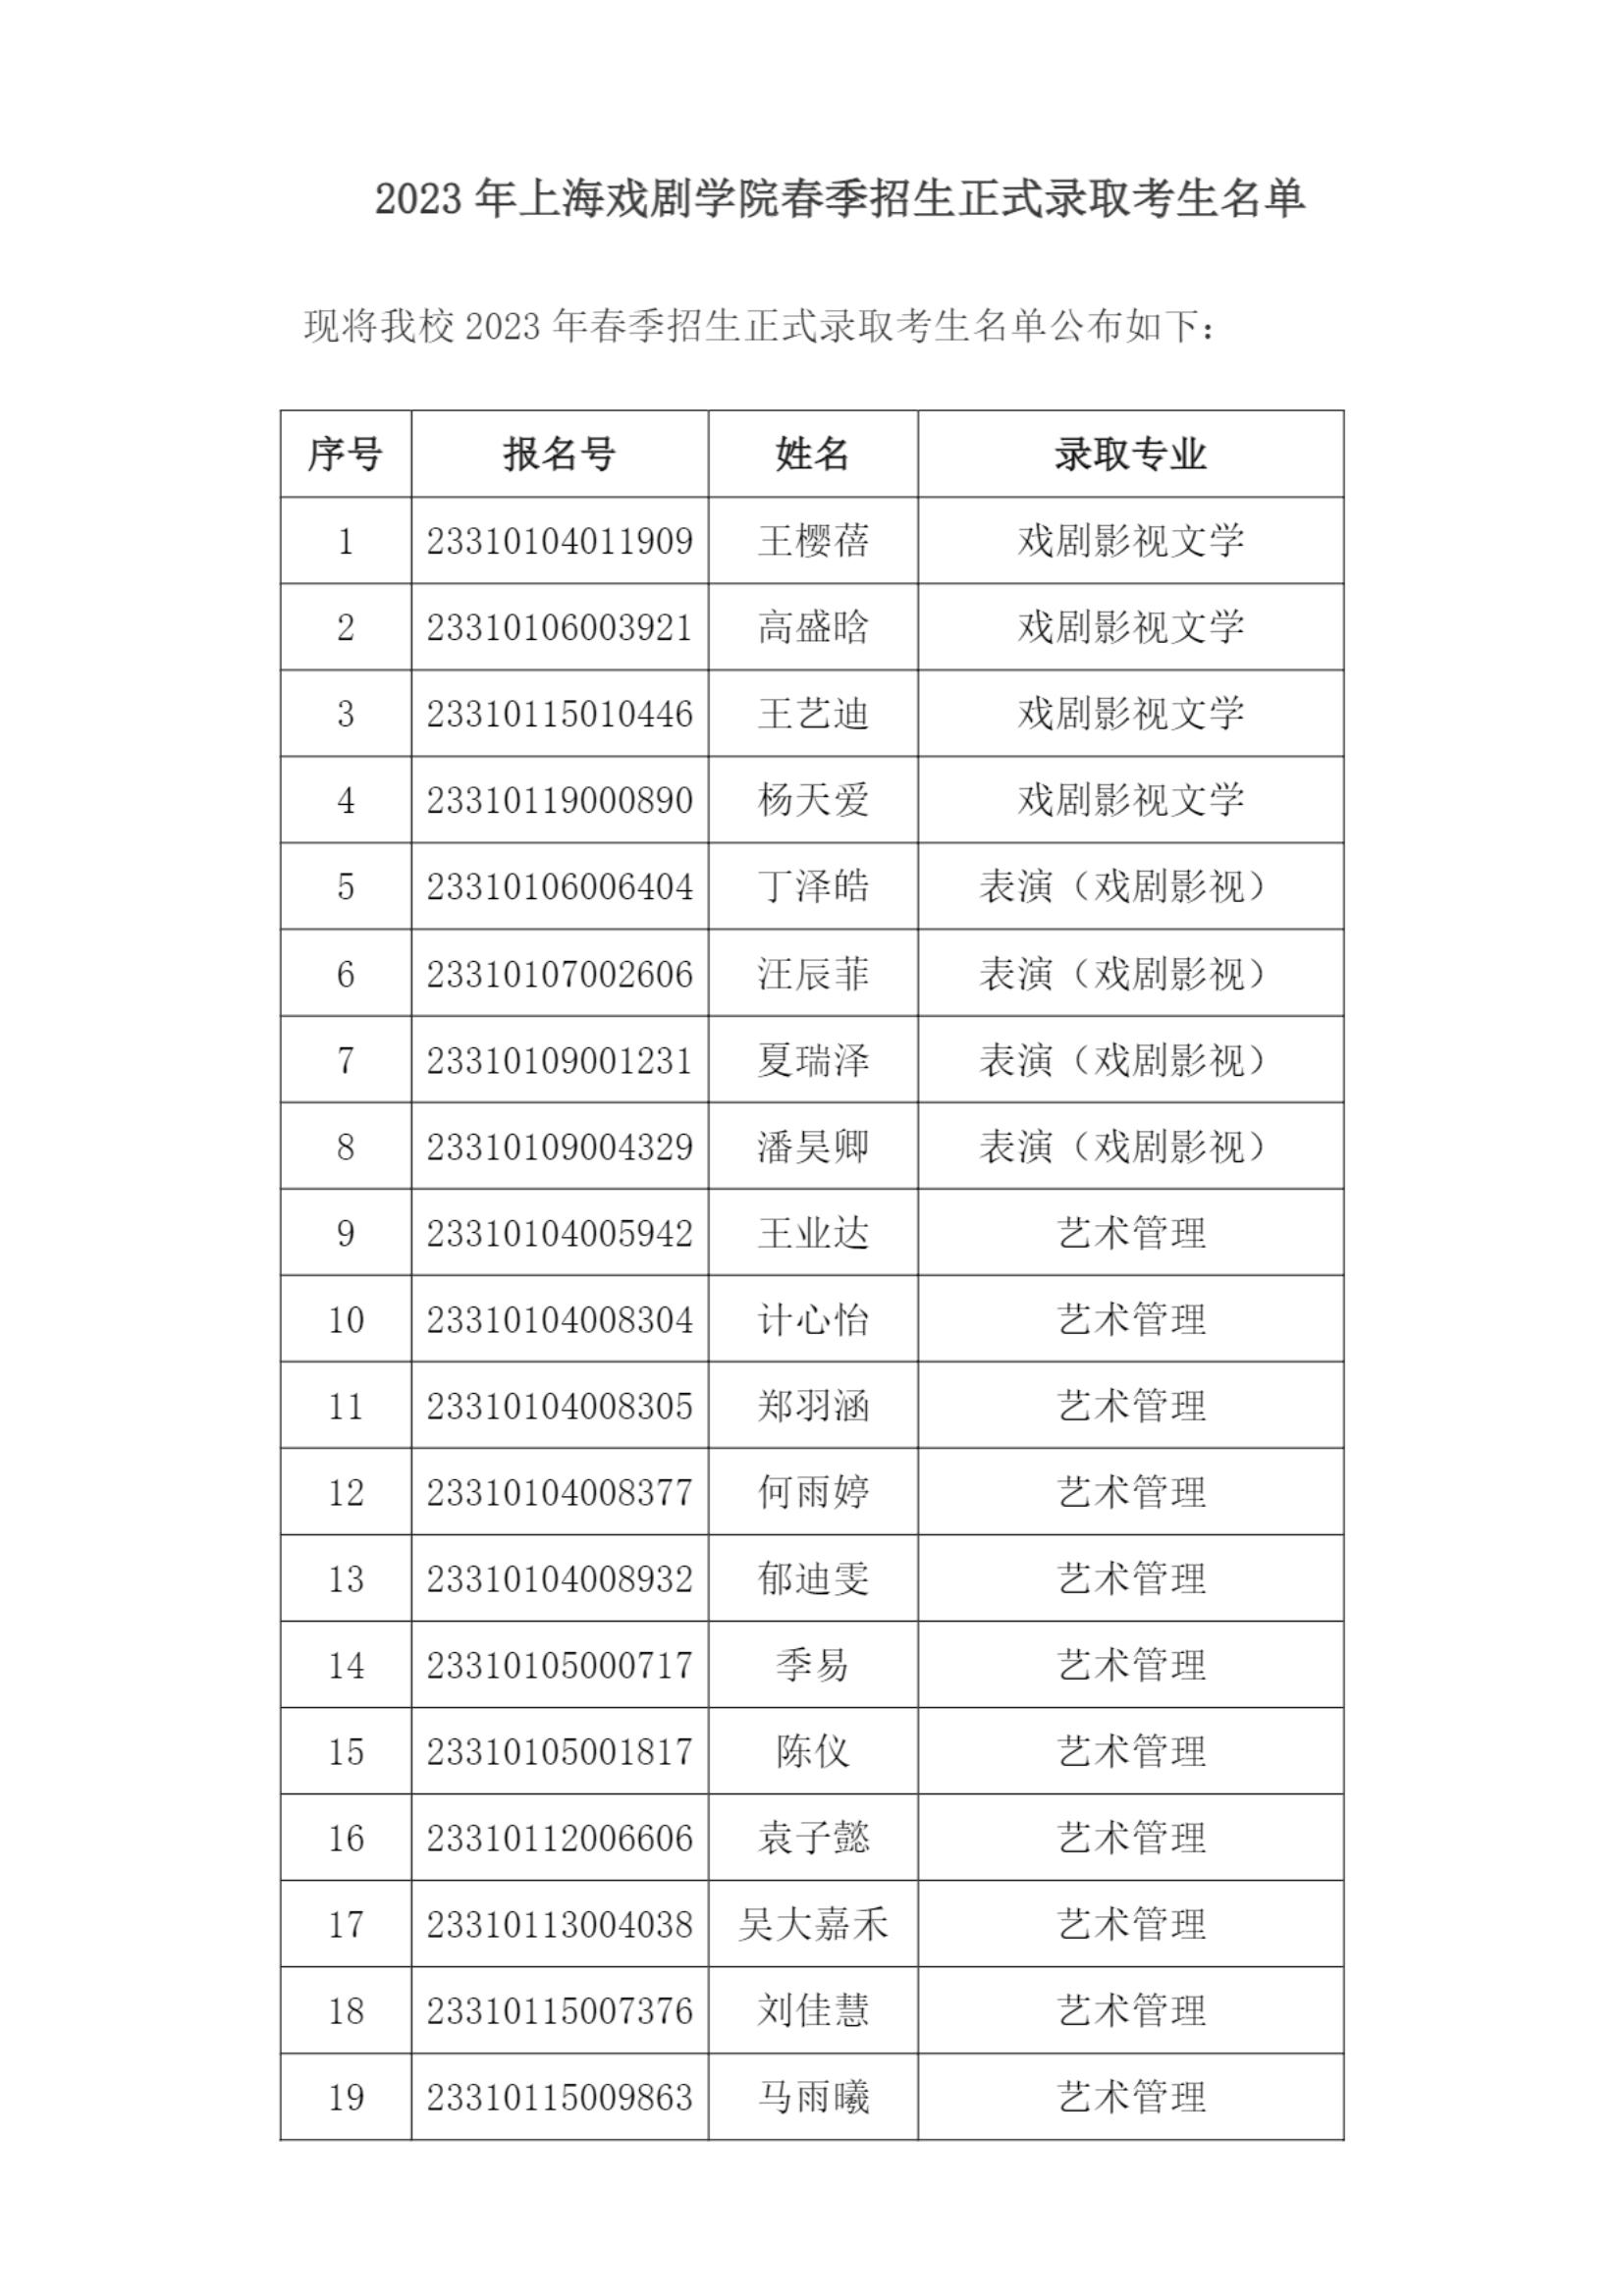 2023年上海戏剧学院春季招生正式录取考生名单_00.jpg